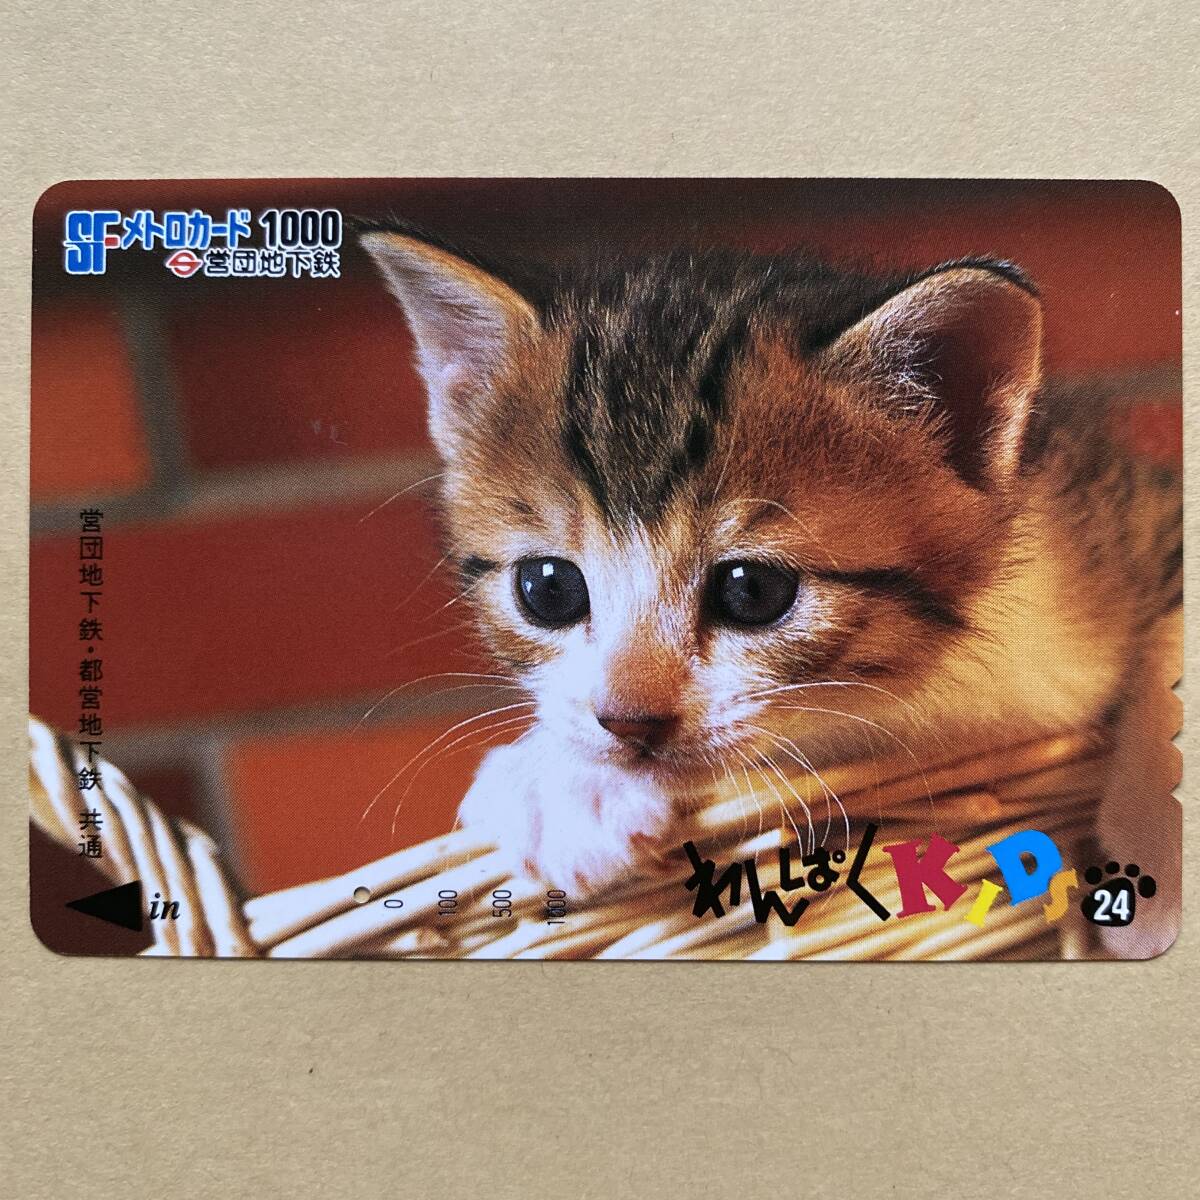 【使用済】 メトロカード 営団地下鉄 東京メトロ わんぱくKIDS24 猫_画像1